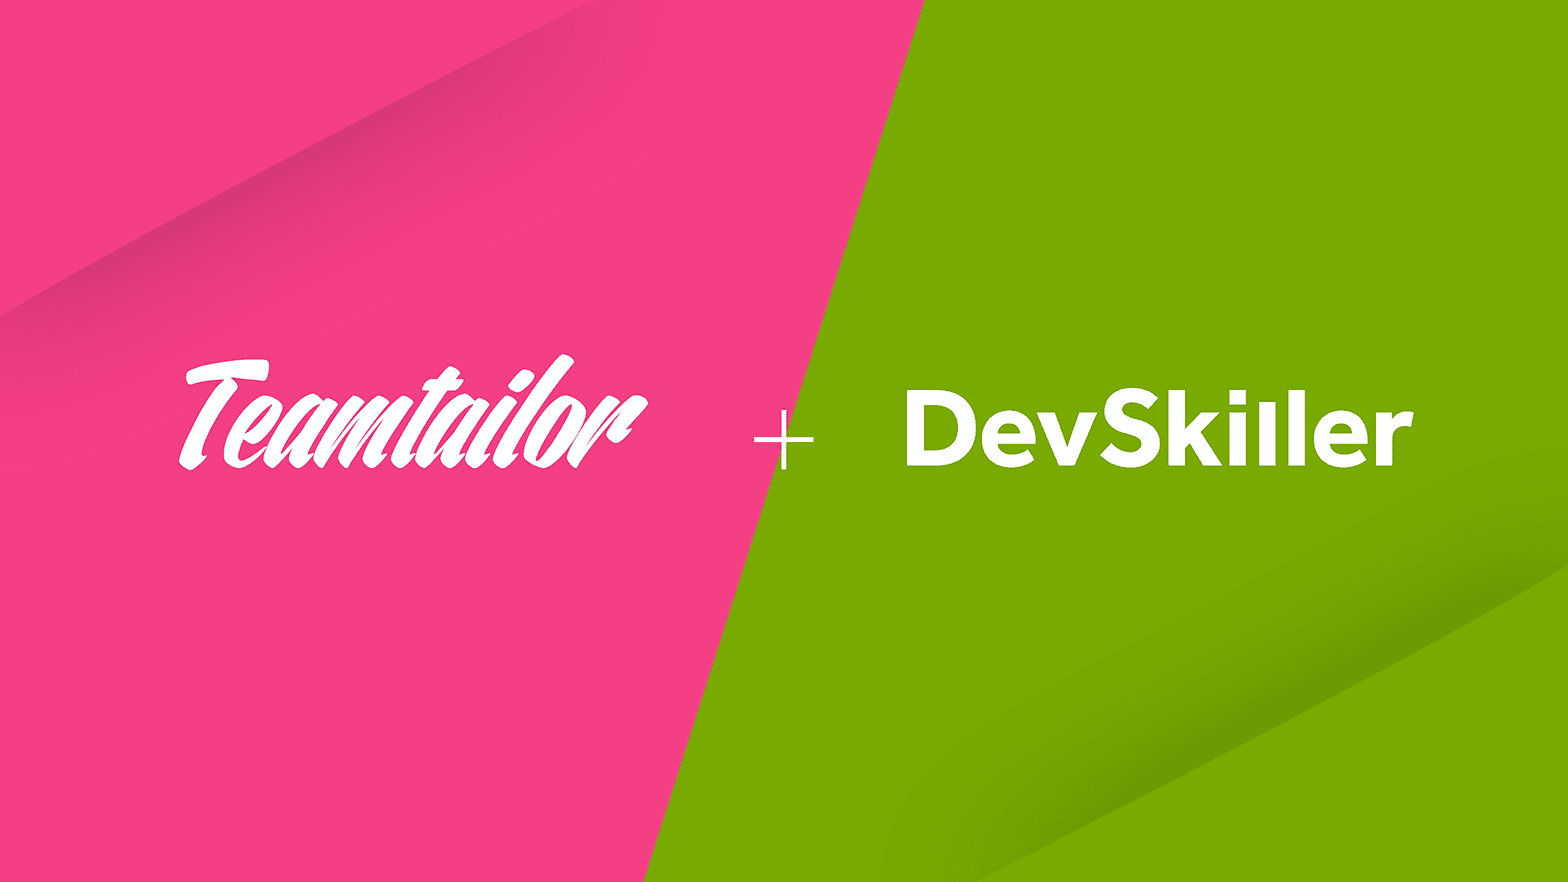 Teamtailor x DevSkiller integration